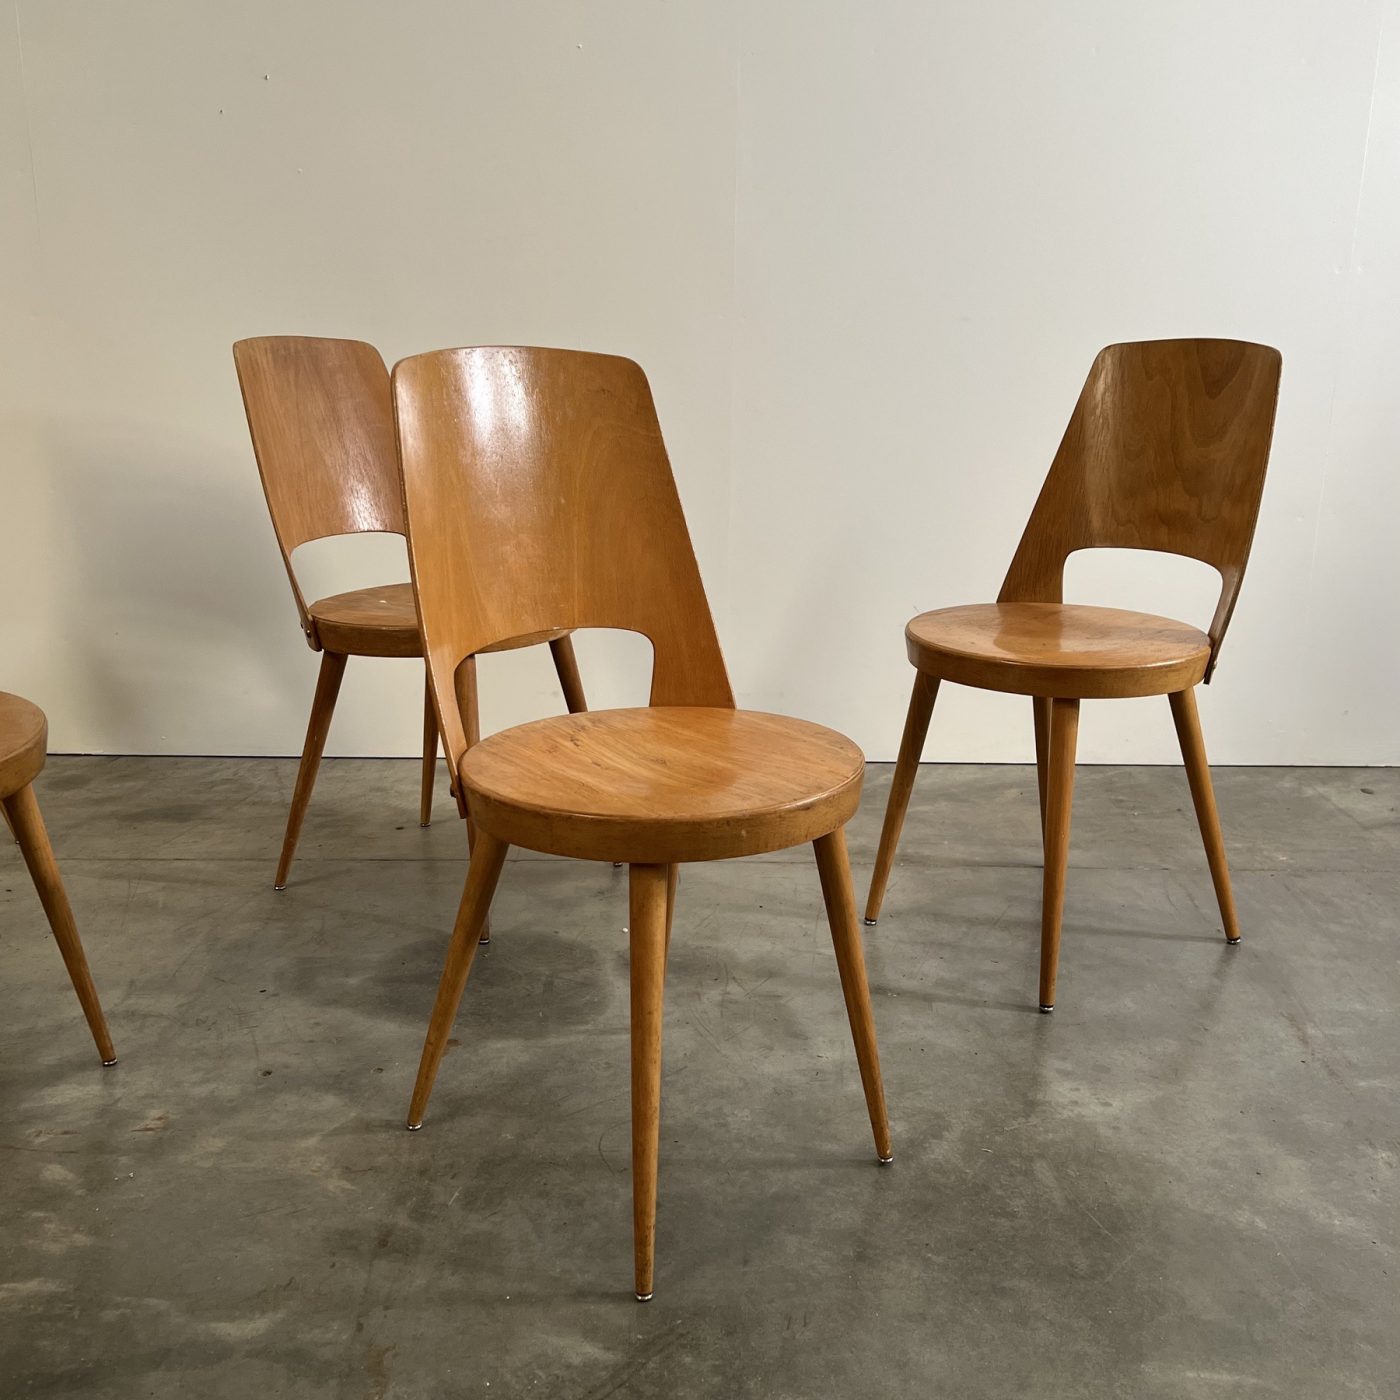 objet-vagabond-bistrot-chairs0007